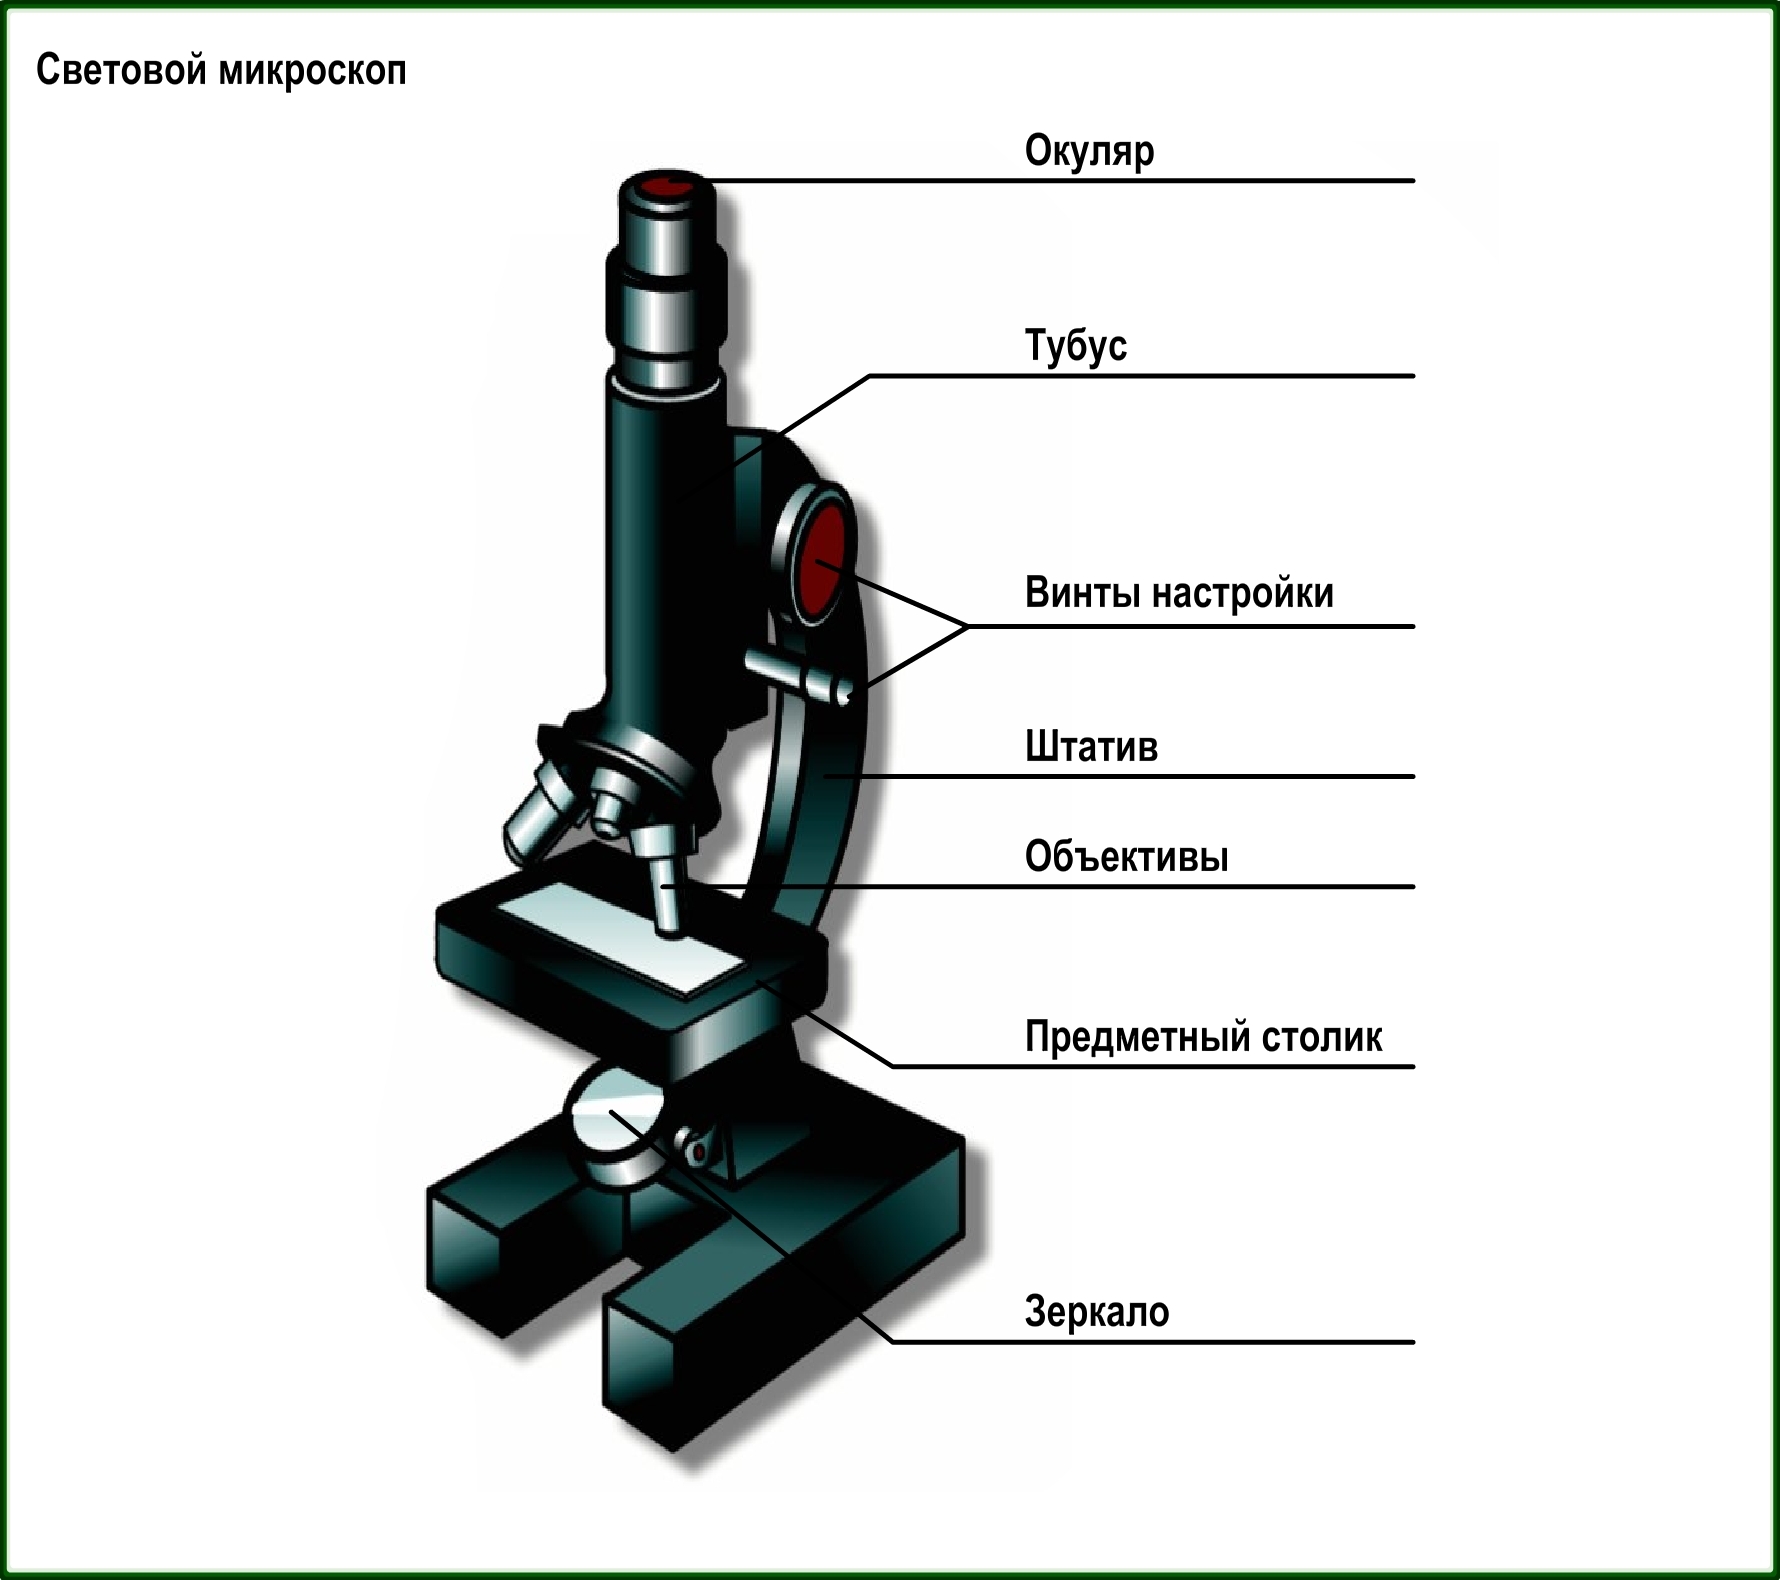 Строение цифрового микроскопа 5. Цифровой микроскоп строение 5 класс. Строение микроскопа 5 класс. Строение светового микроскопа 5 класс. Каждая часть микроскопа